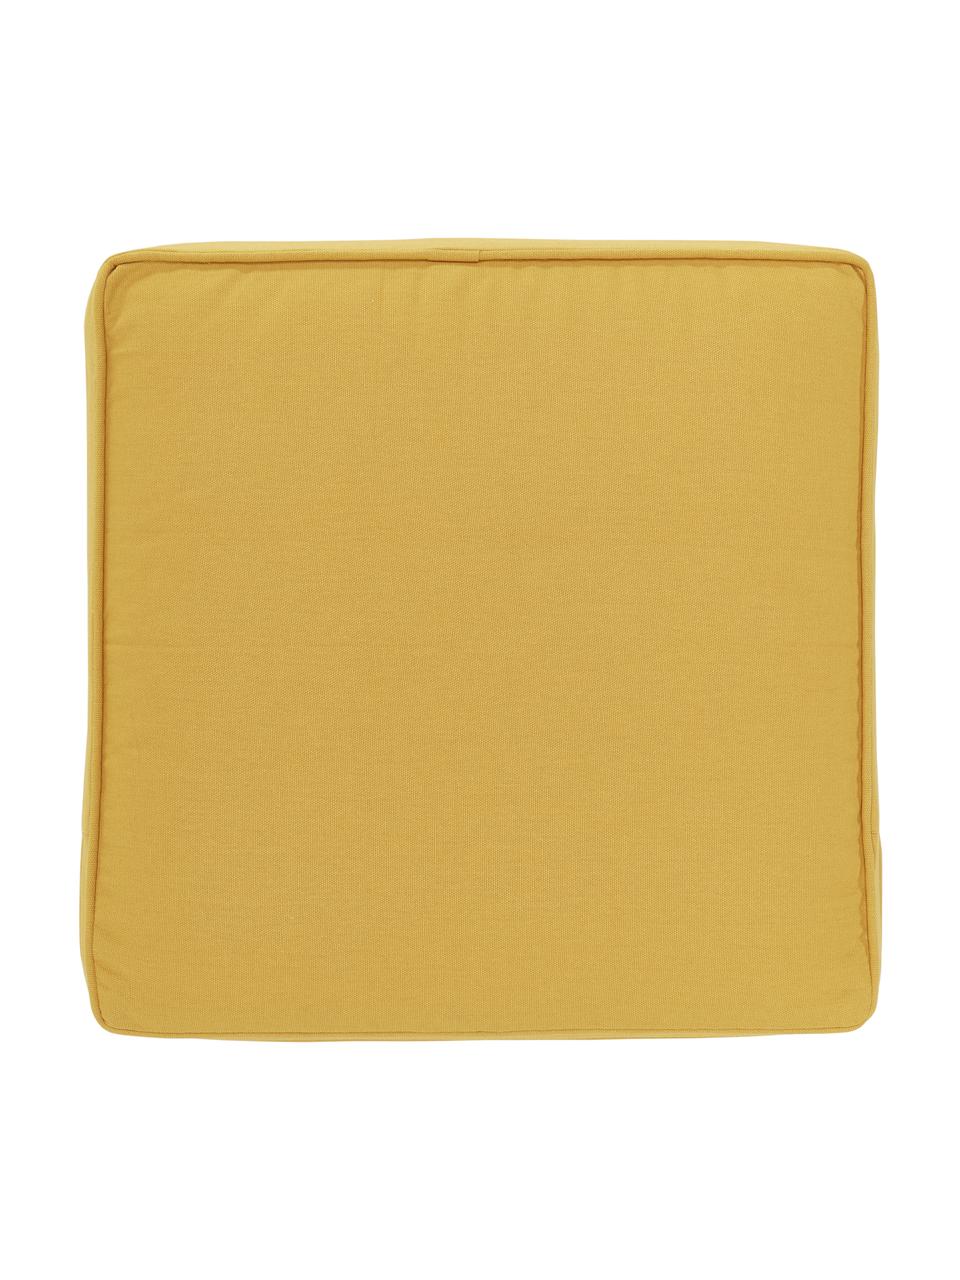 Hoog katoenen stoelkussen Zoey in geel, Geel, B 40 x L 40 cm